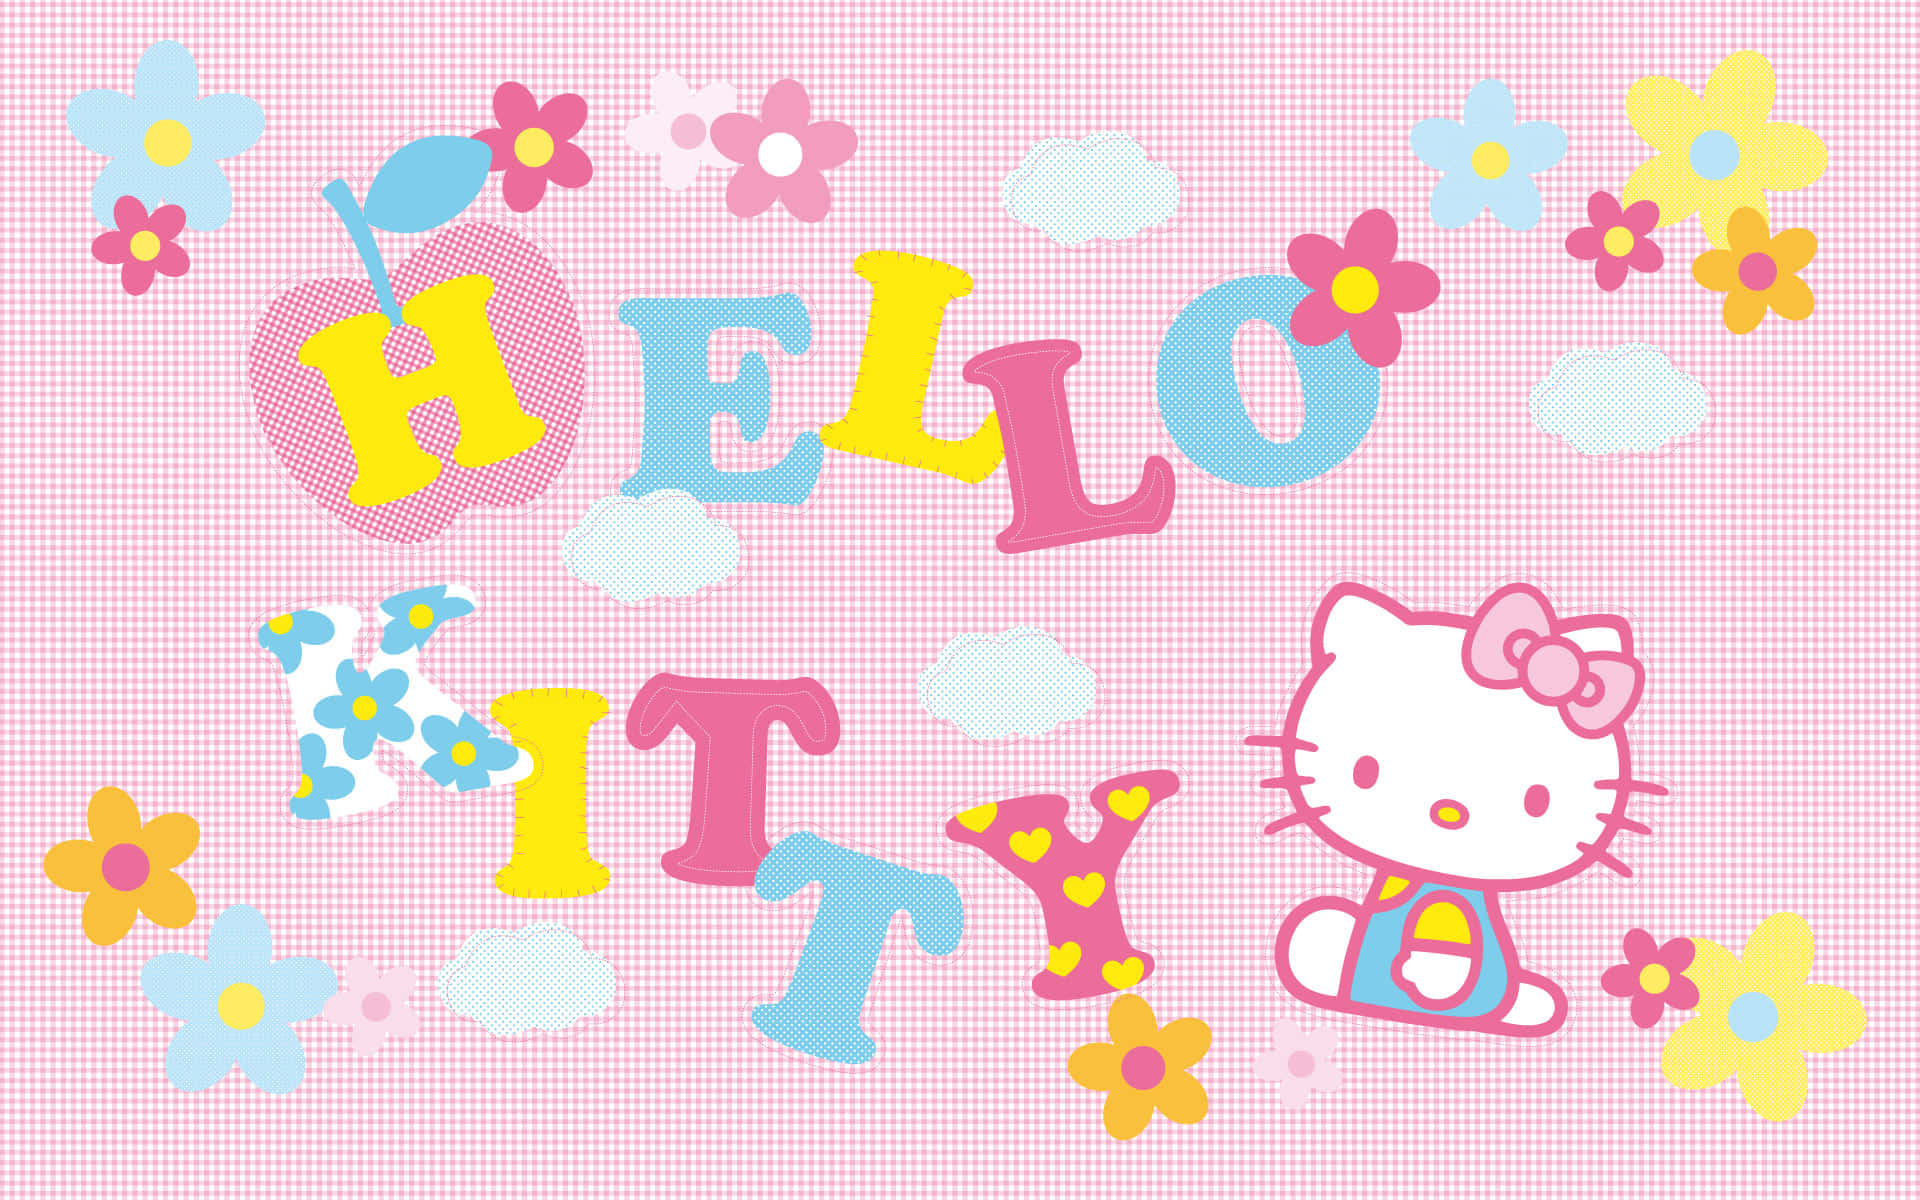 Sfondoestetico Floreale Rosa Di Hello Kitty